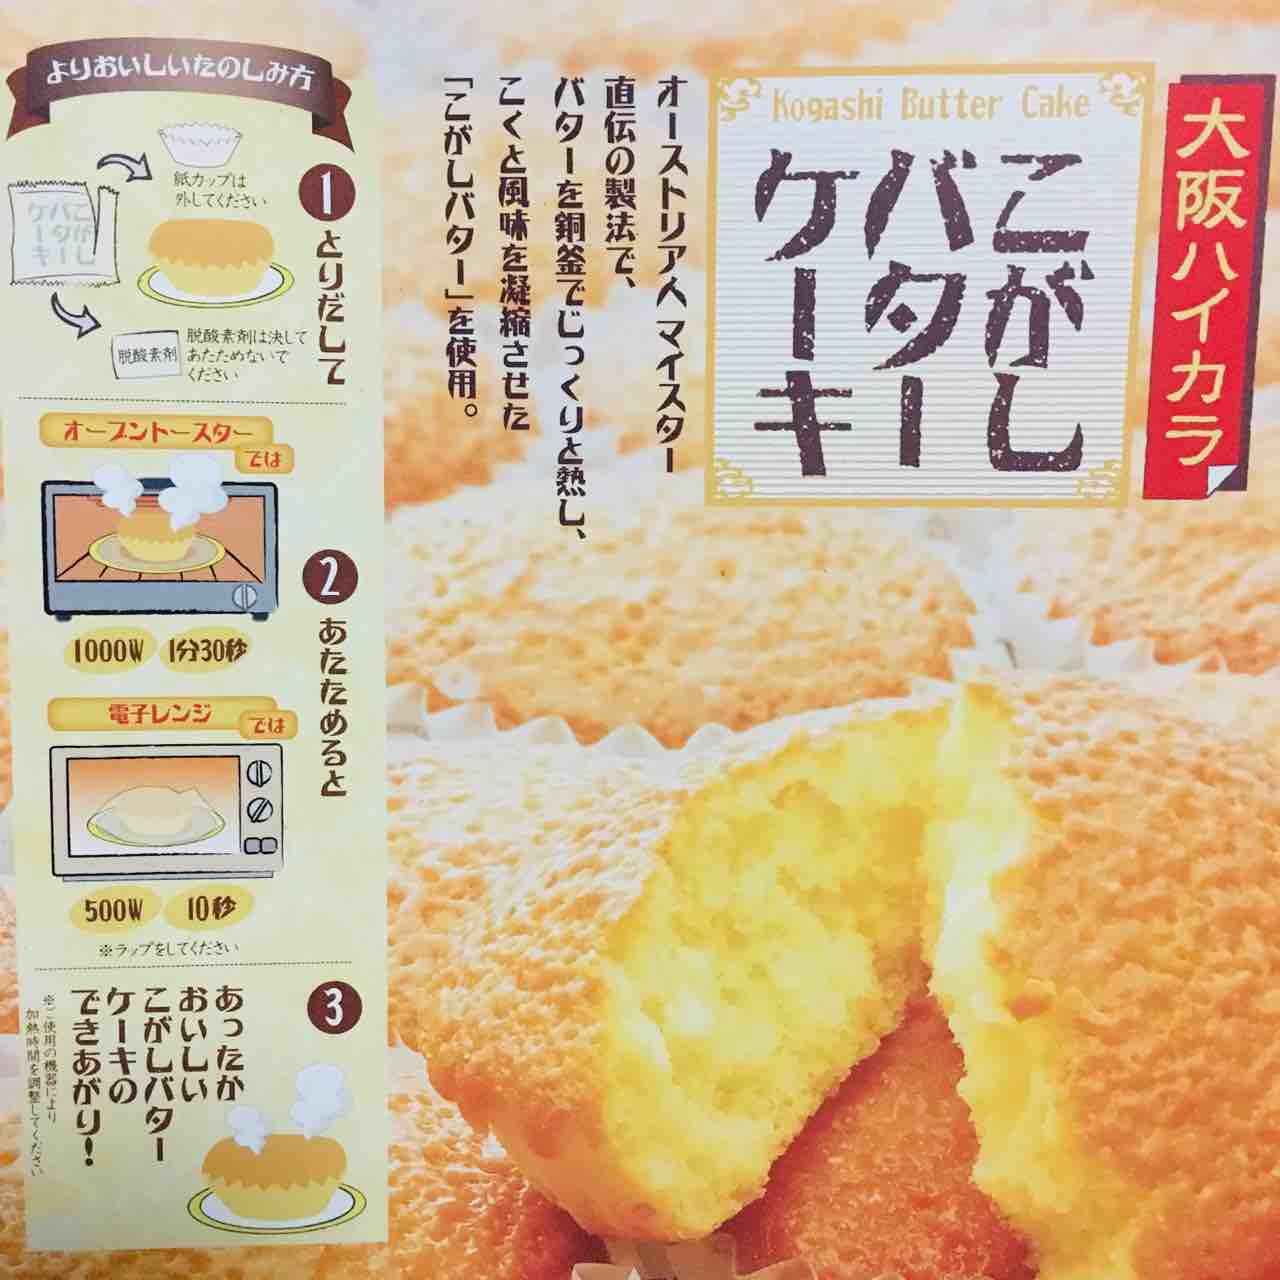 大阪泉州土産 むか新のこがしバターケーキは絶対おすすめ かしこく楽しむおでかけ旅ブログ